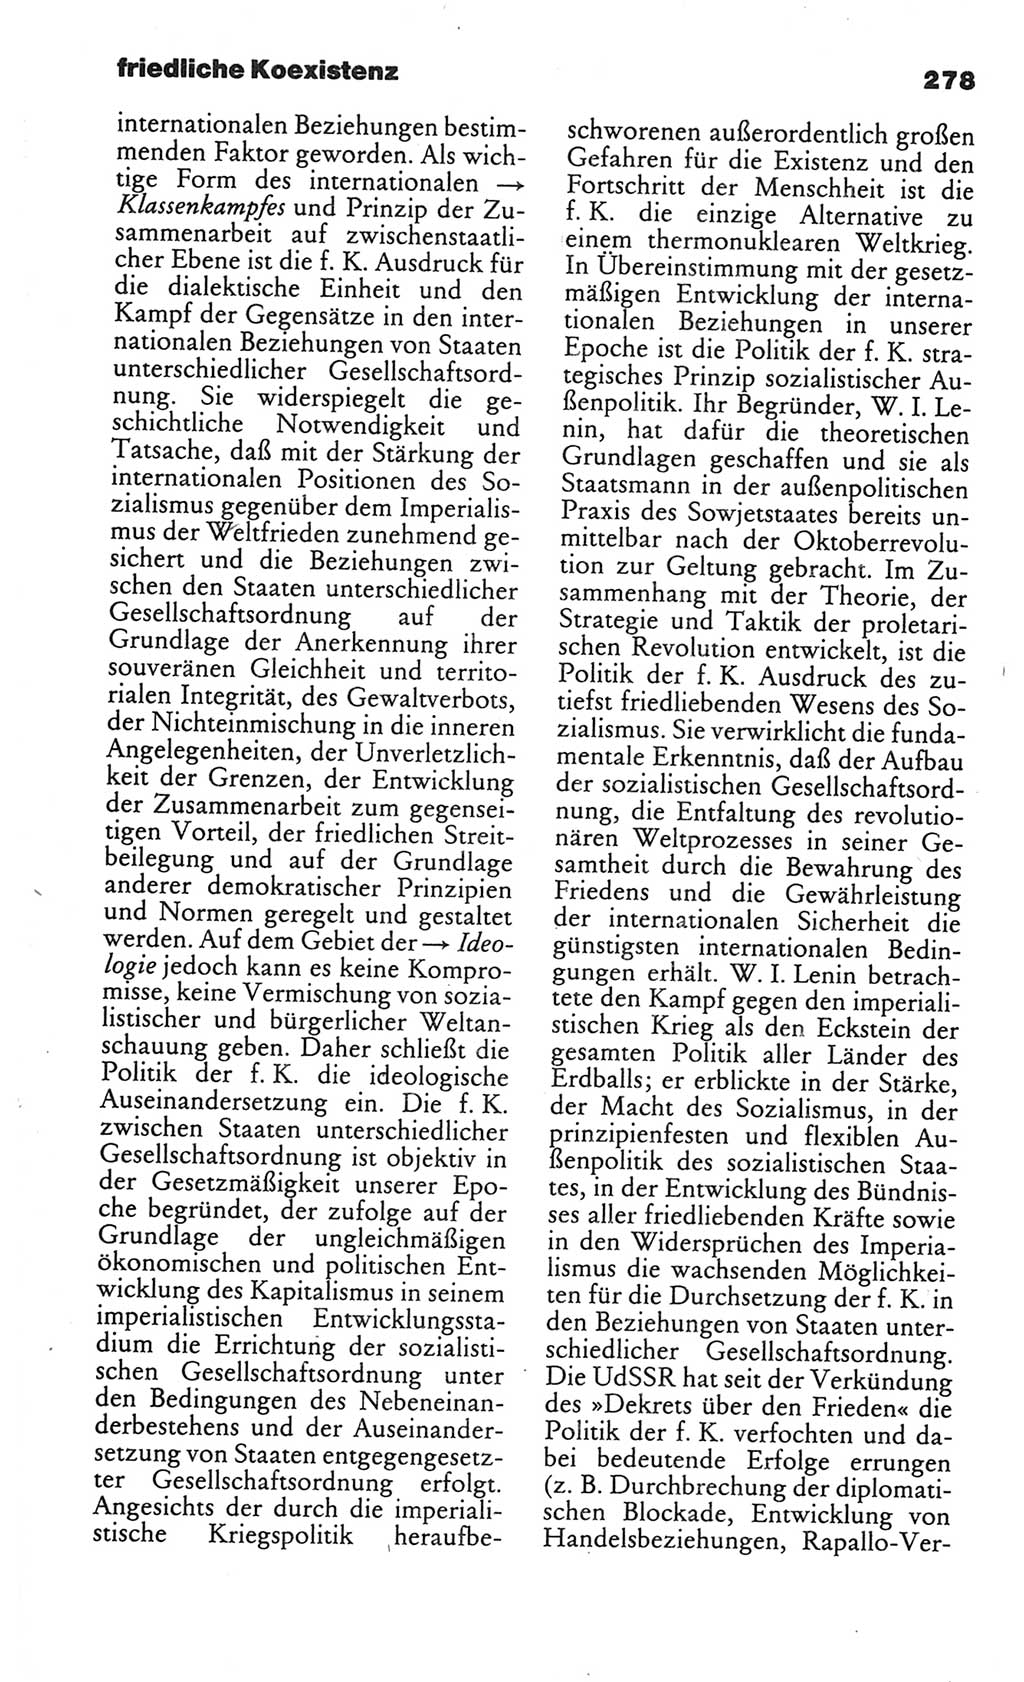 Kleines politisches Wörterbuch [Deutsche Demokratische Republik (DDR)] 1986, Seite 278 (Kl. pol. Wb. DDR 1986, S. 278)